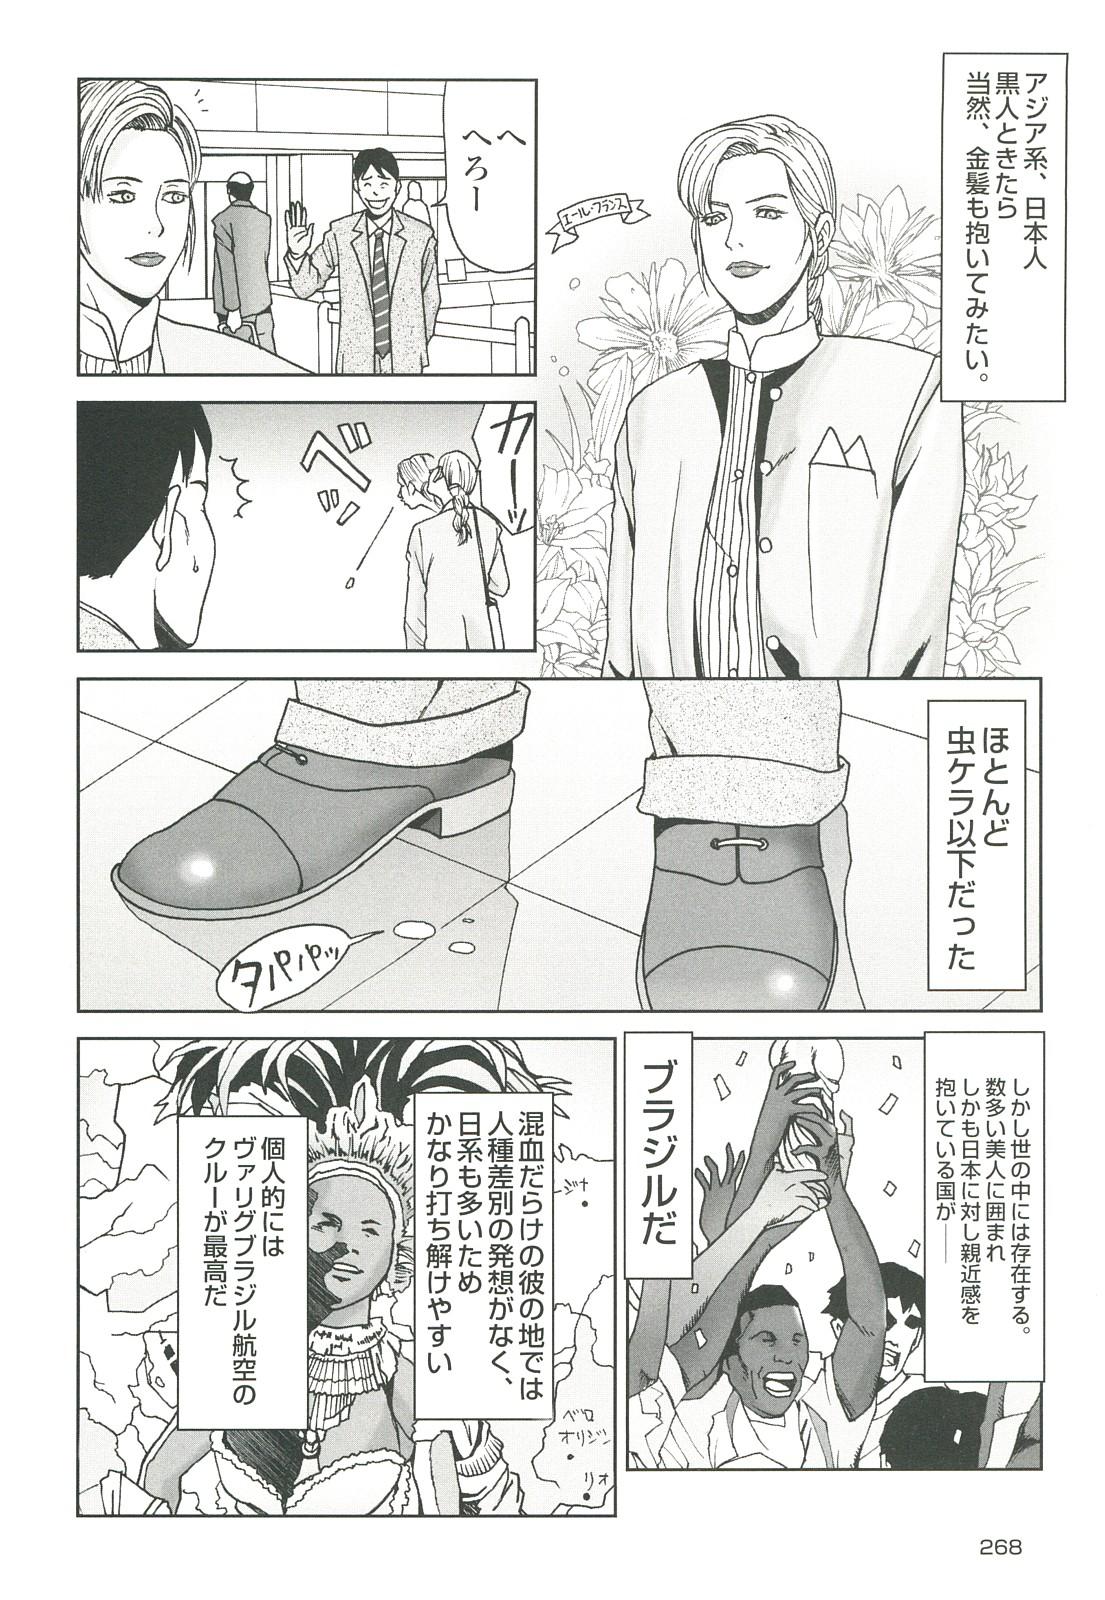 コミック裏モノJAPAN Vol.18 今井のりたつスペシャル号 267